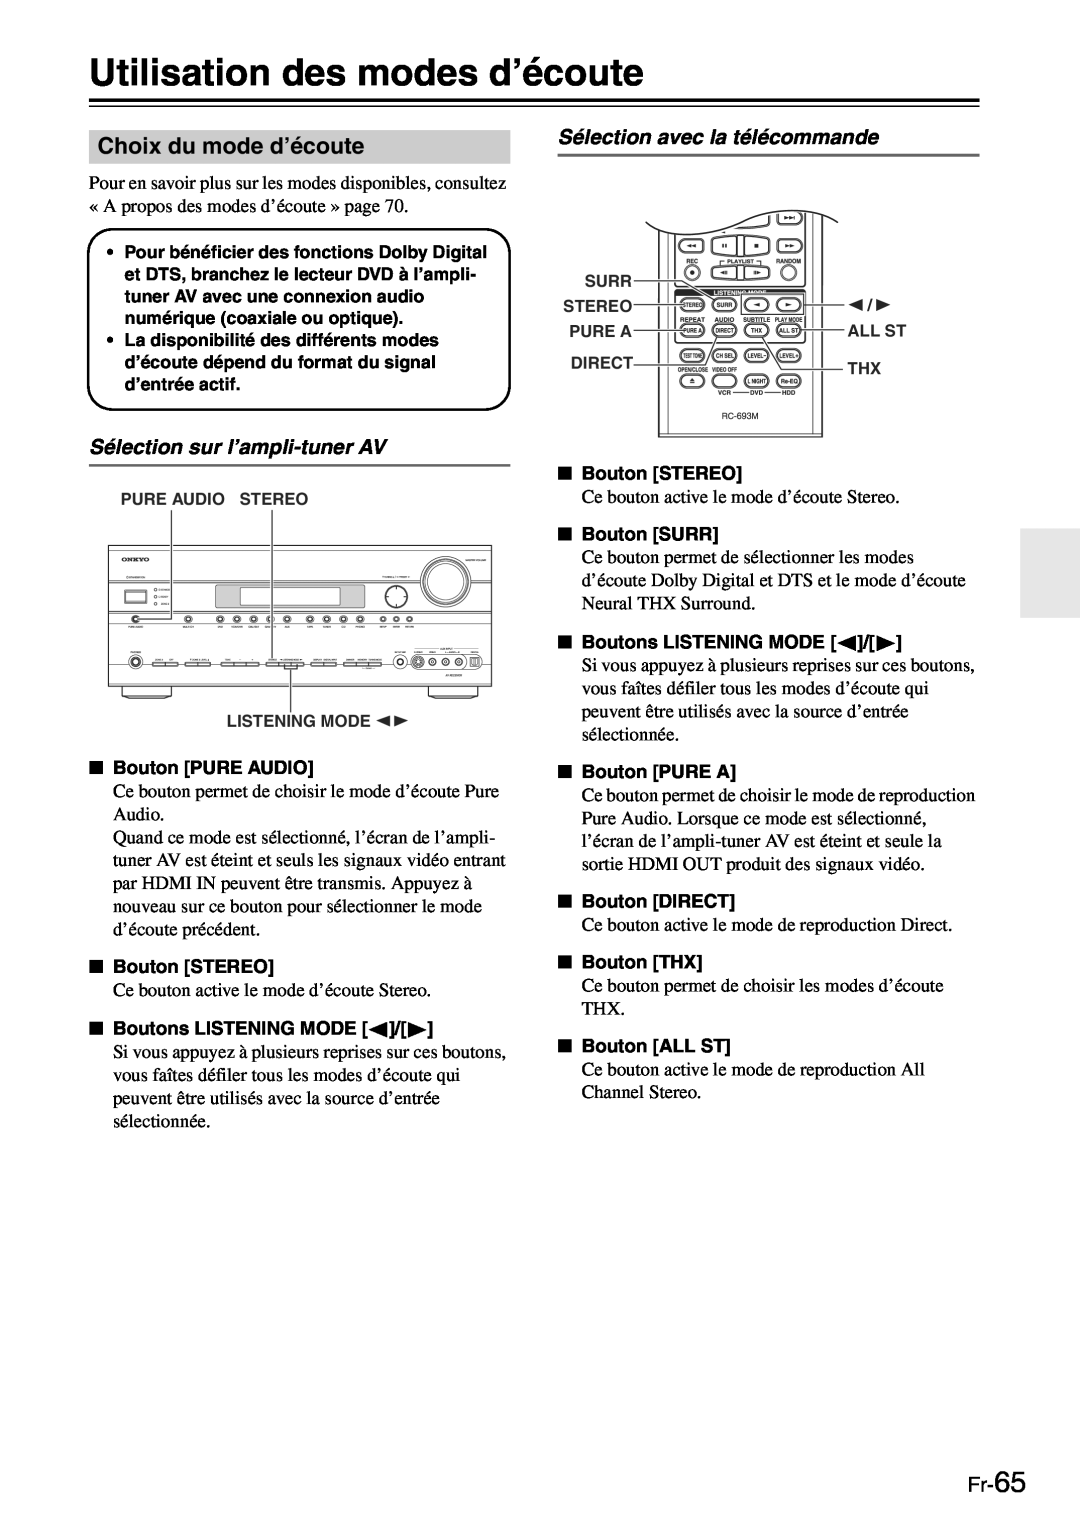 Onkyo TX-SR705 manual Utilisation des modes d’écoute, Choix du mode d’écoute, Sélection avec la télécommande, Fr-65 